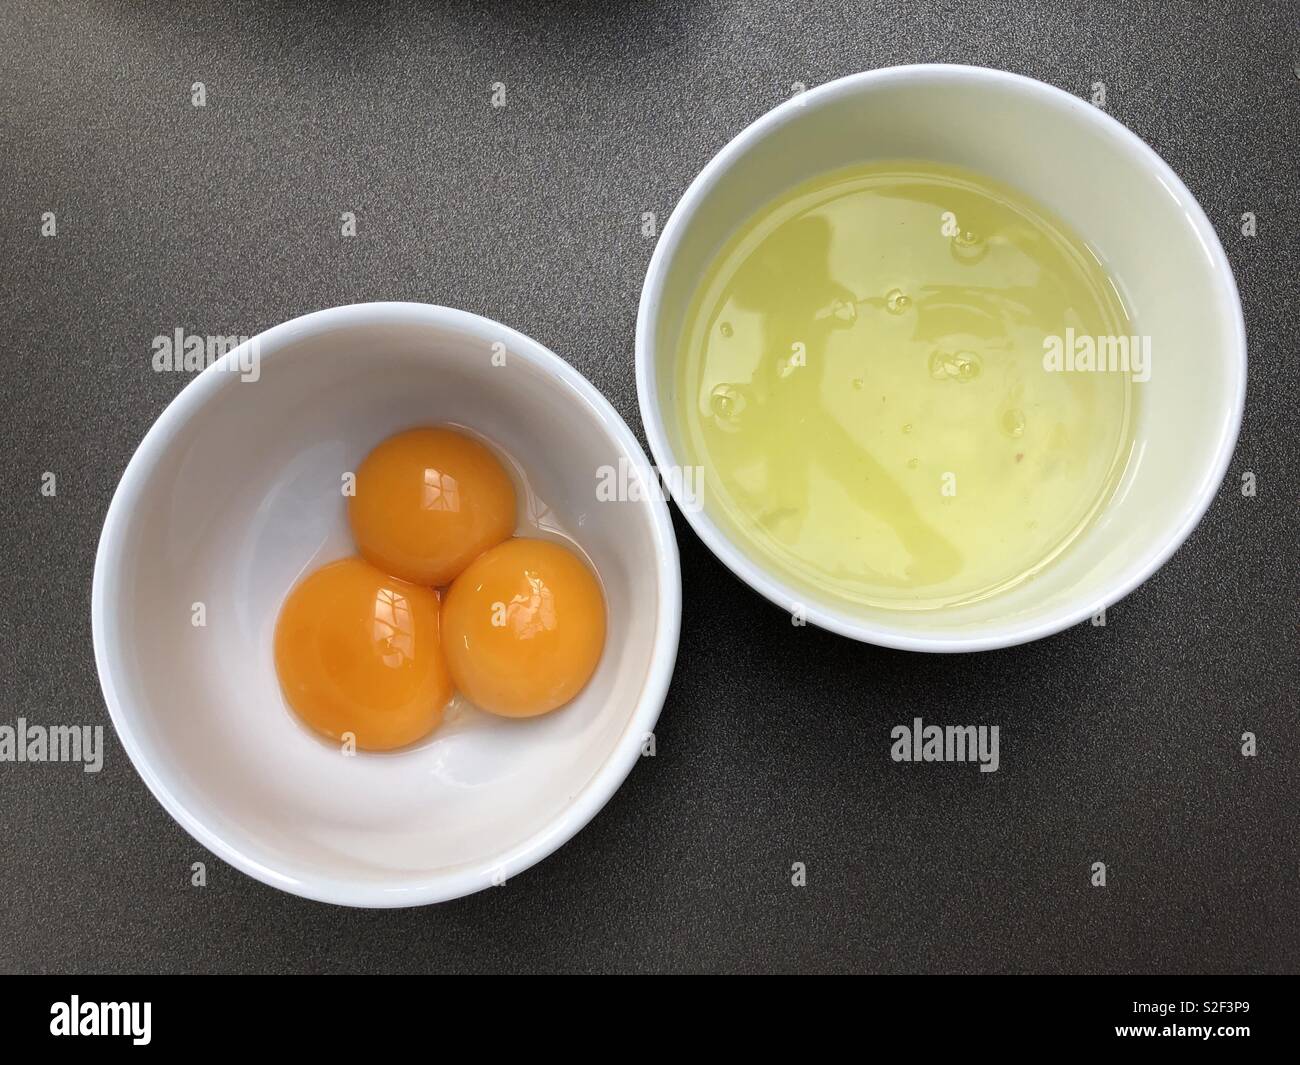 3 huevos separados en yemas y claras contenidas en 2 cuencos blancos lisos Foto de stock